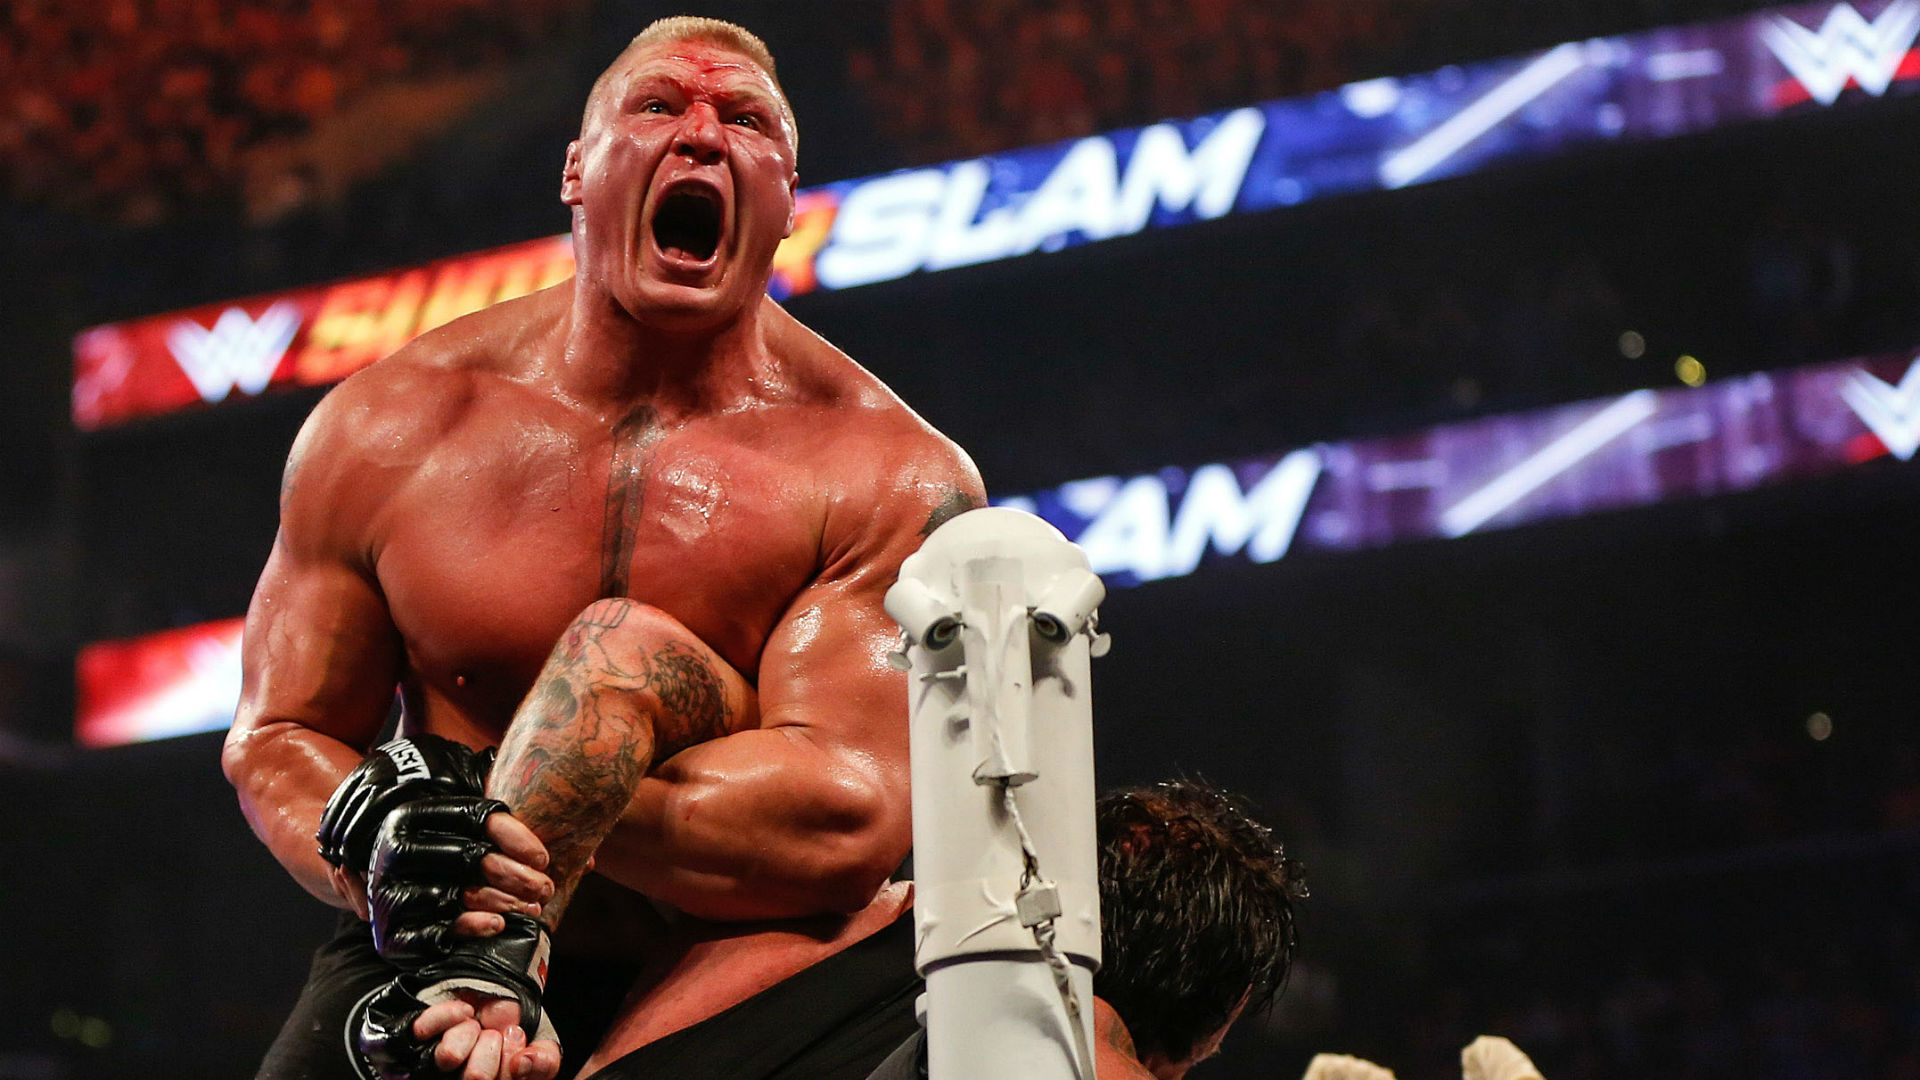 WWE समर-स्लैम के इतिहास के पांच सबसे बेहतरीन मैच, जिसने रोक दी थी दर्शको की साँसे 3